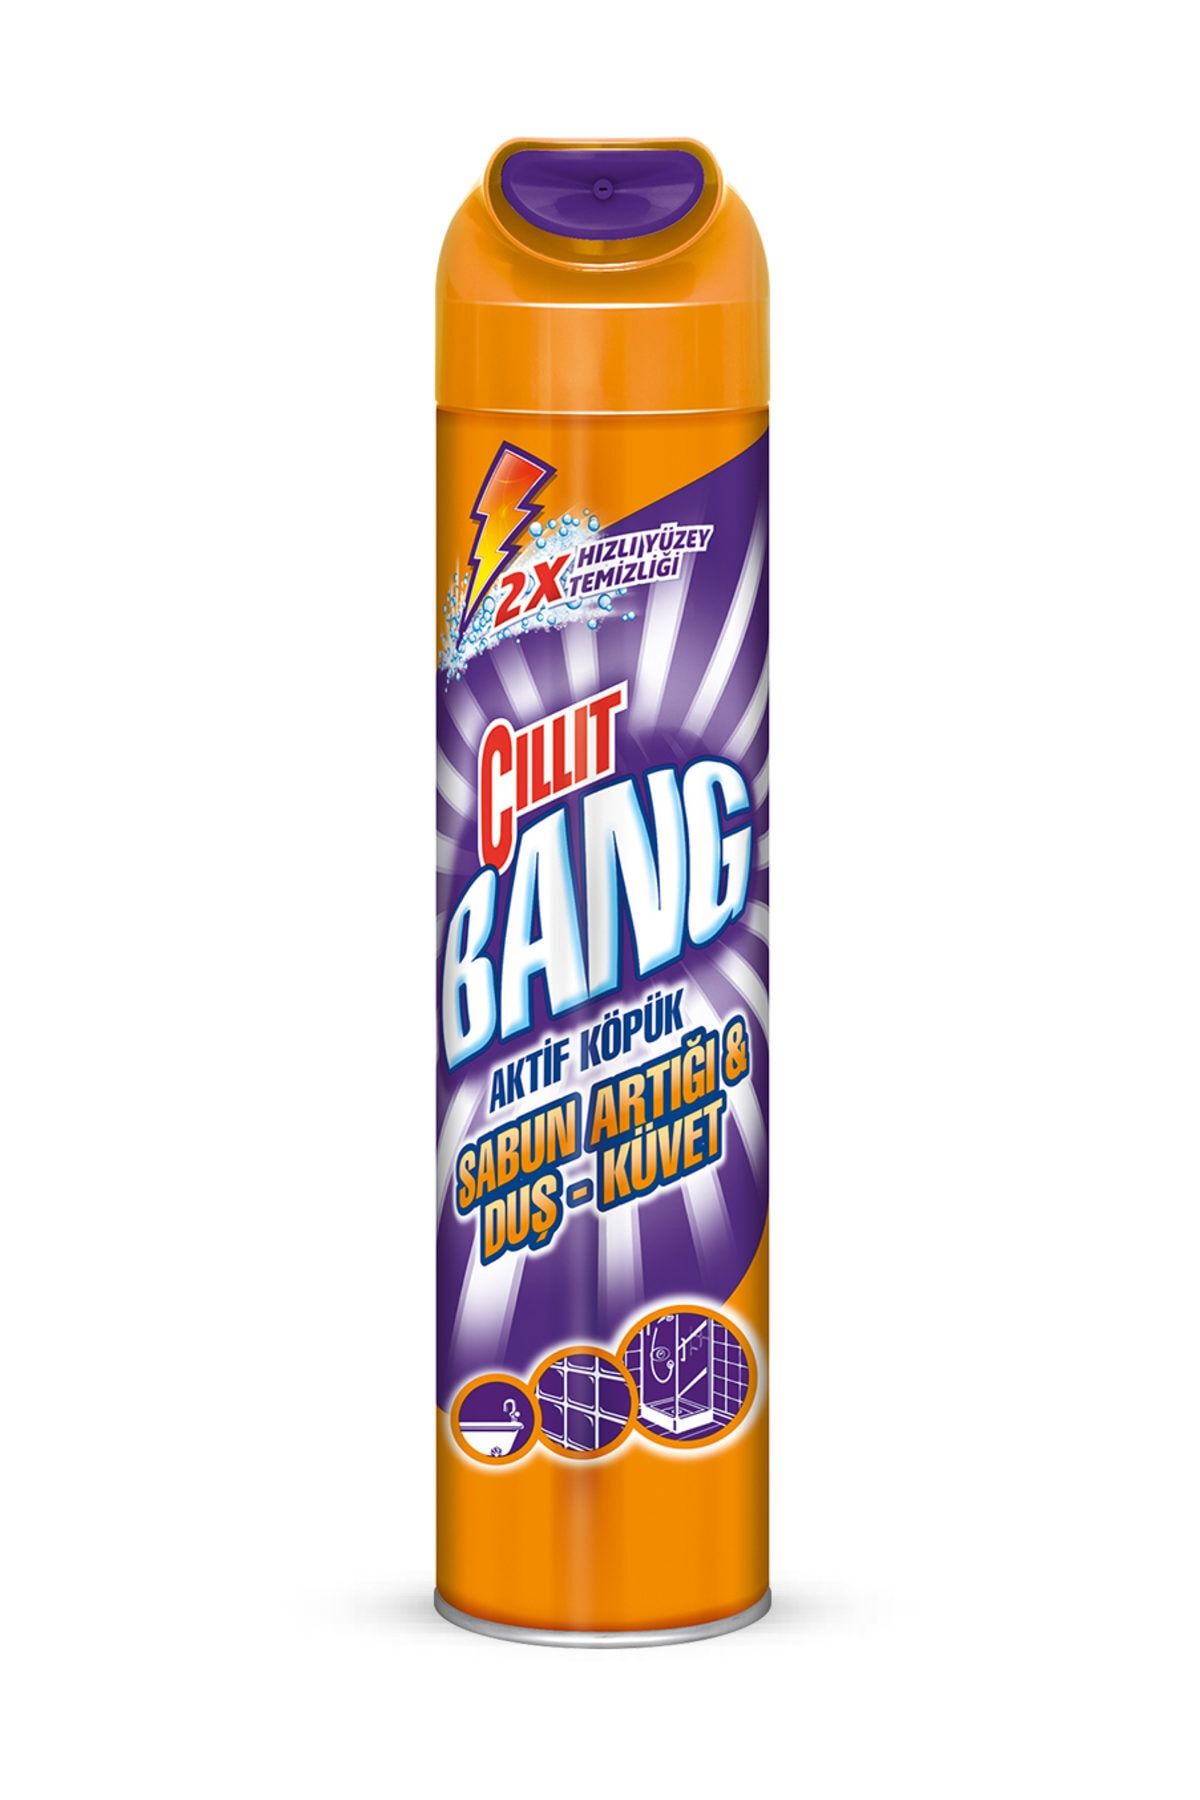 Cillit Bang - Spray Limpiador Suciedad y Manchas de Humedad, para baños y  juntas negras - 750 ml (3040445) - AliExpress